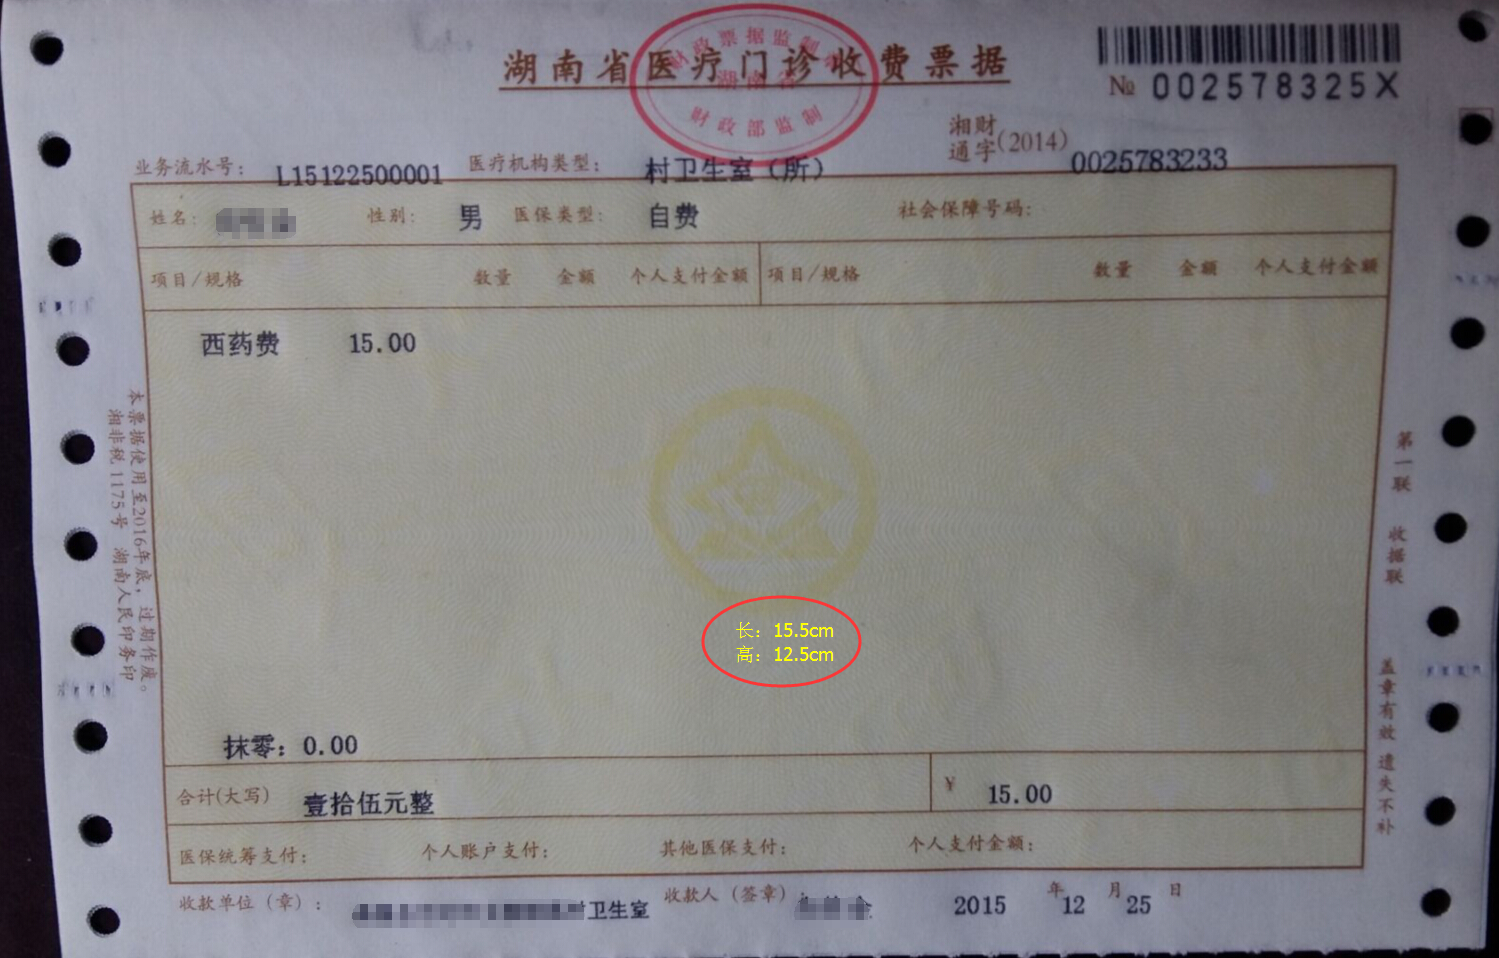 湖南省医疗门诊收费正式发票(内有详细图示以